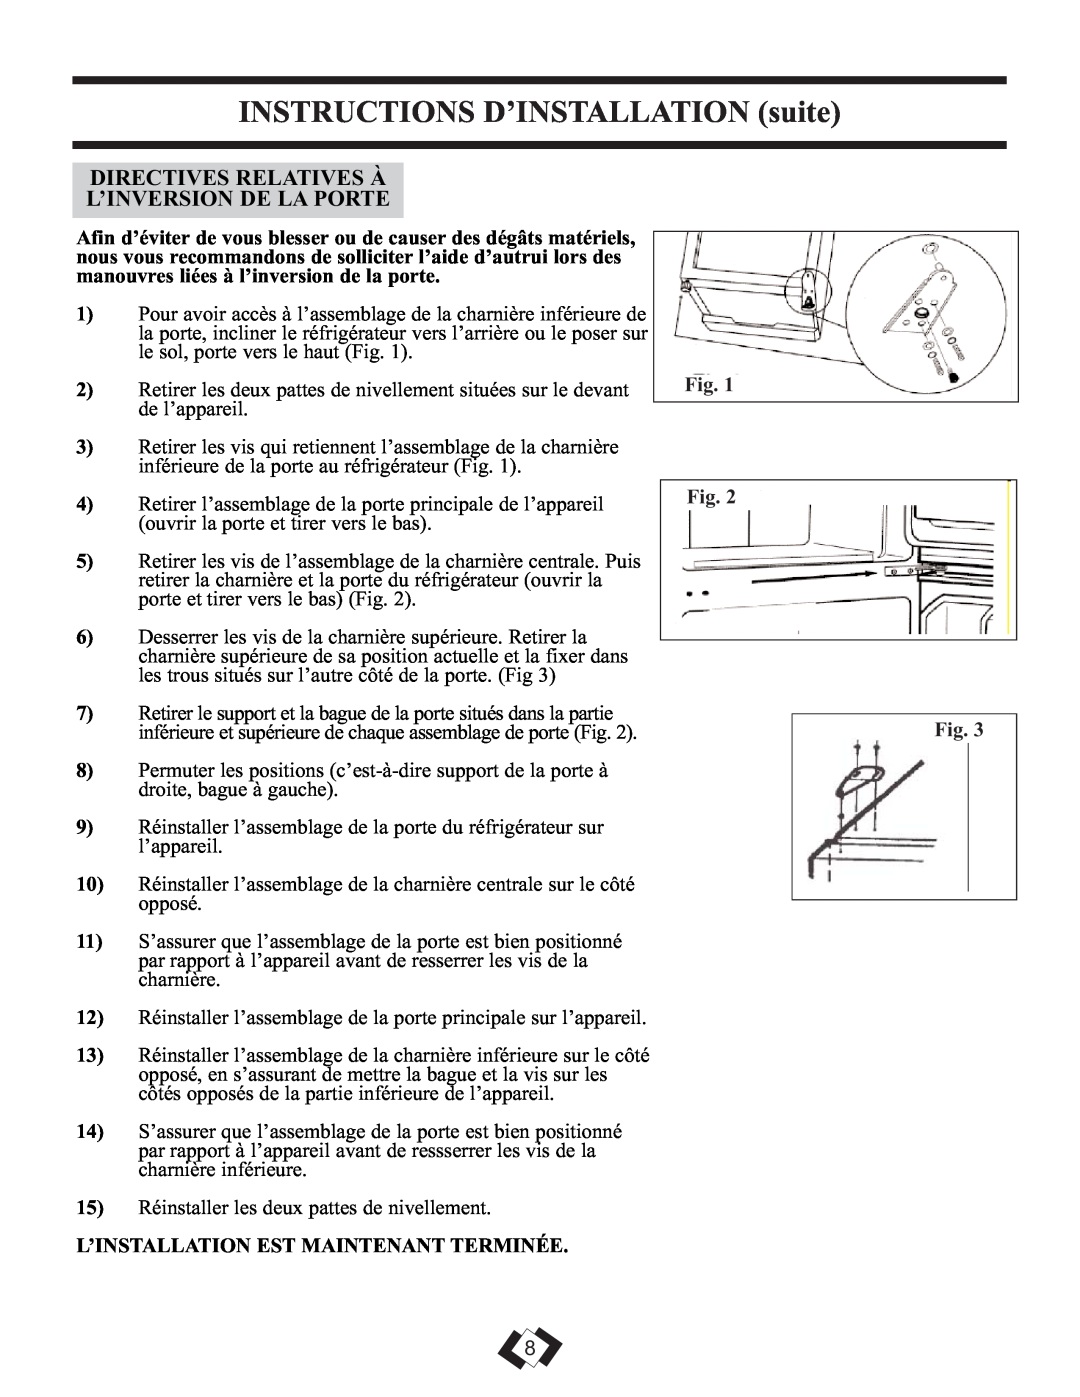 Danby DFF261WDB installation instructions INSTRUCTIONS D’INSTALLATION suite, Directives Relatives À L’Inversion De La Porte 